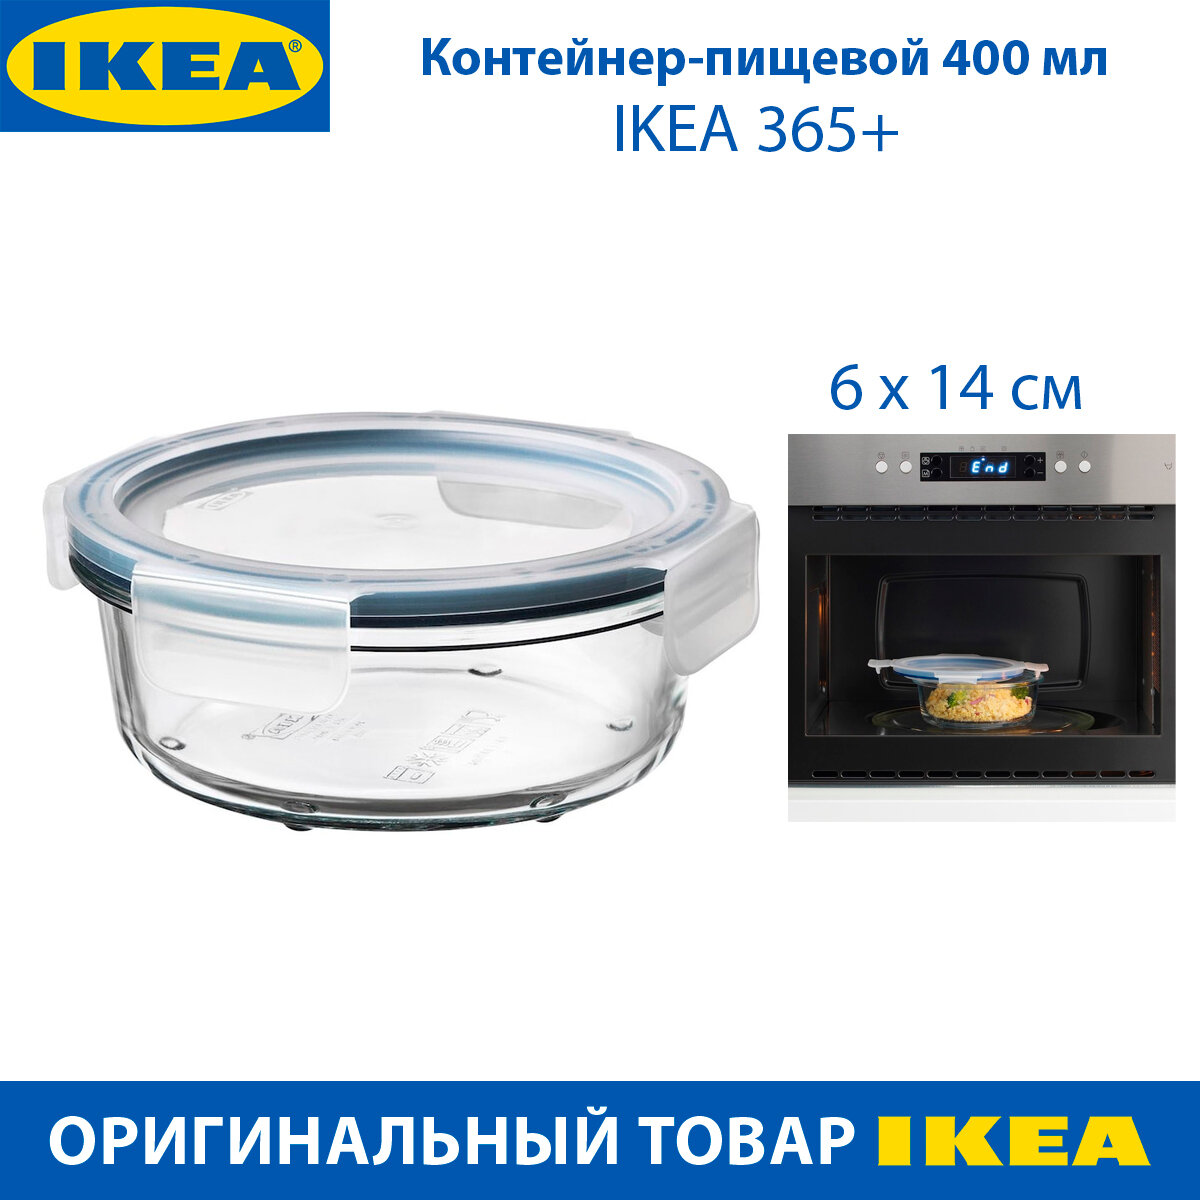 Контейнер пищевой IKEA - 365+, с крышкой, 0.4 л, 14 см, круглый, стекло, 1 шт